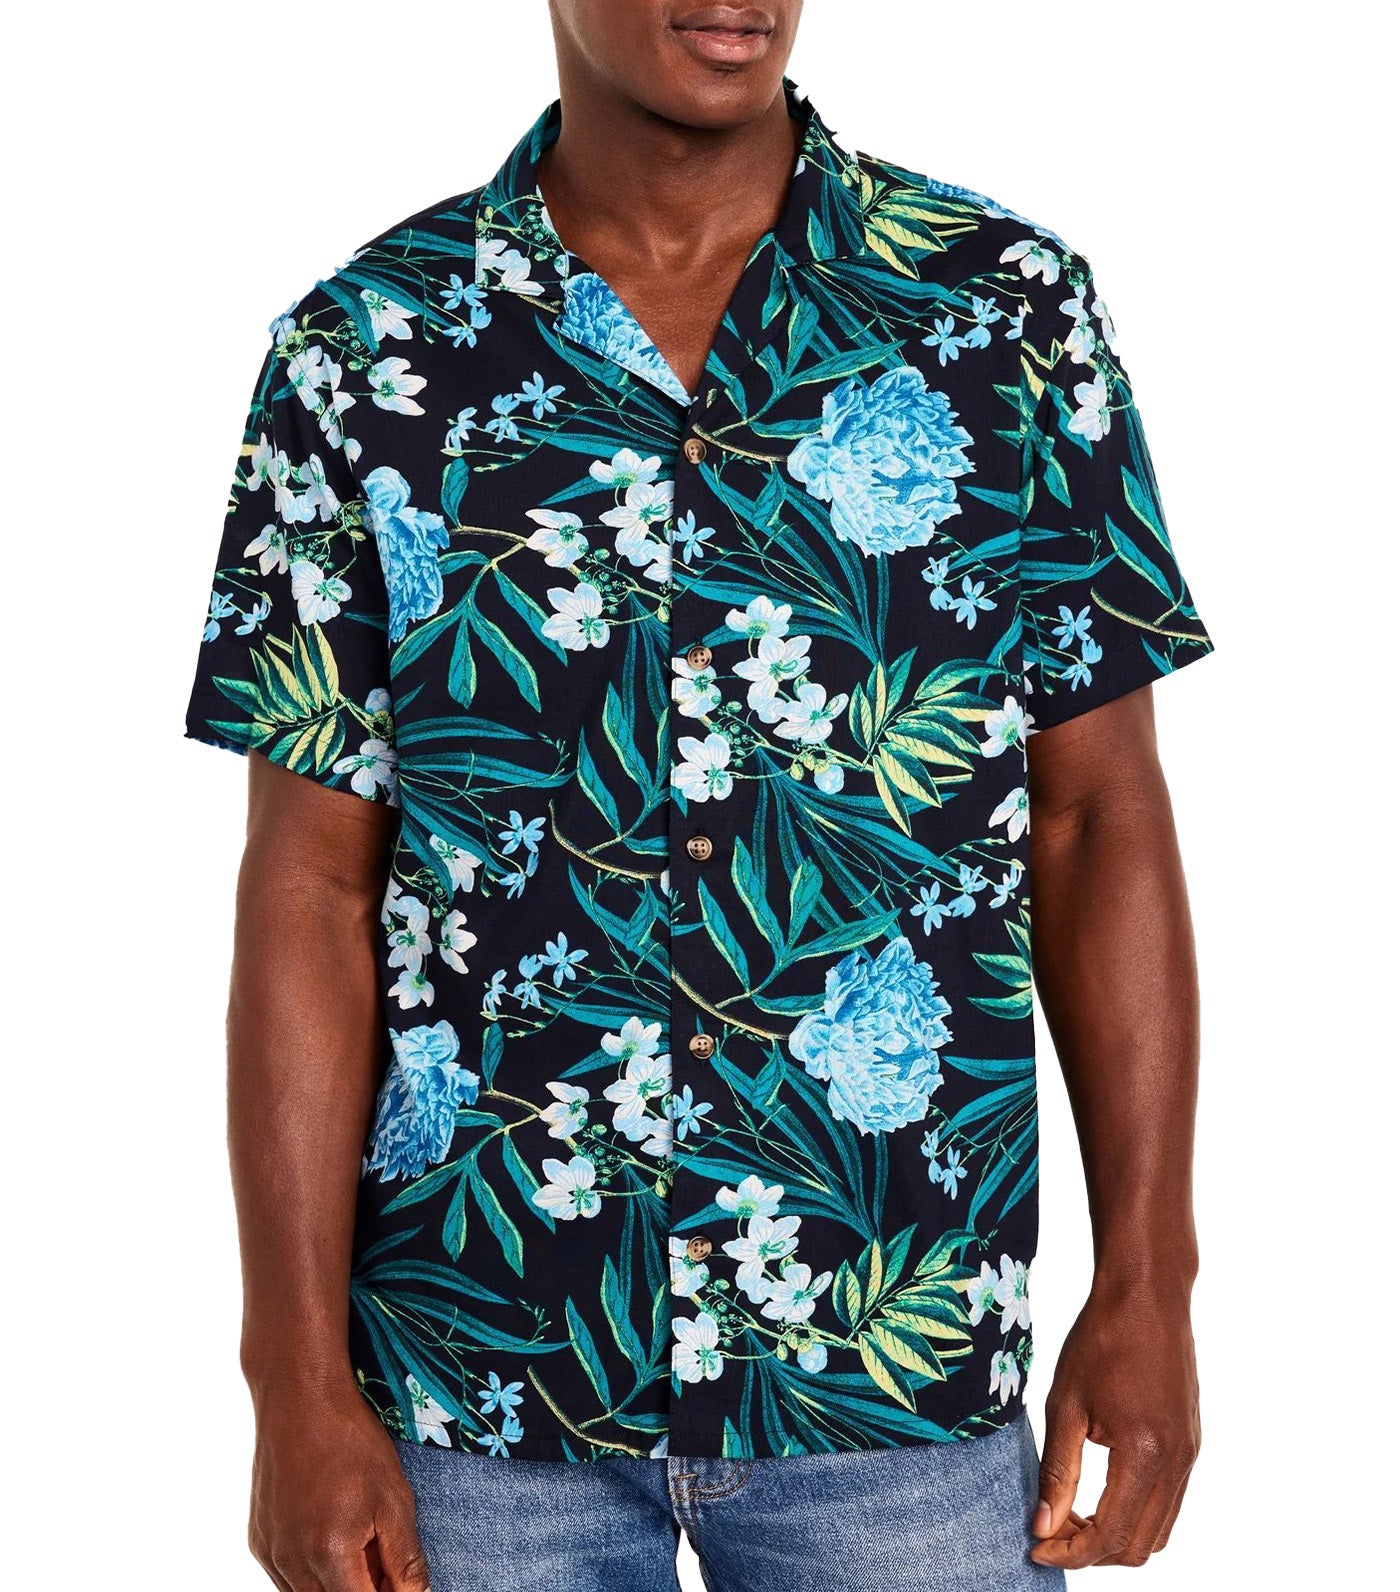 Short-Sleeve Printed Camp Shirt for Men Blue Floral